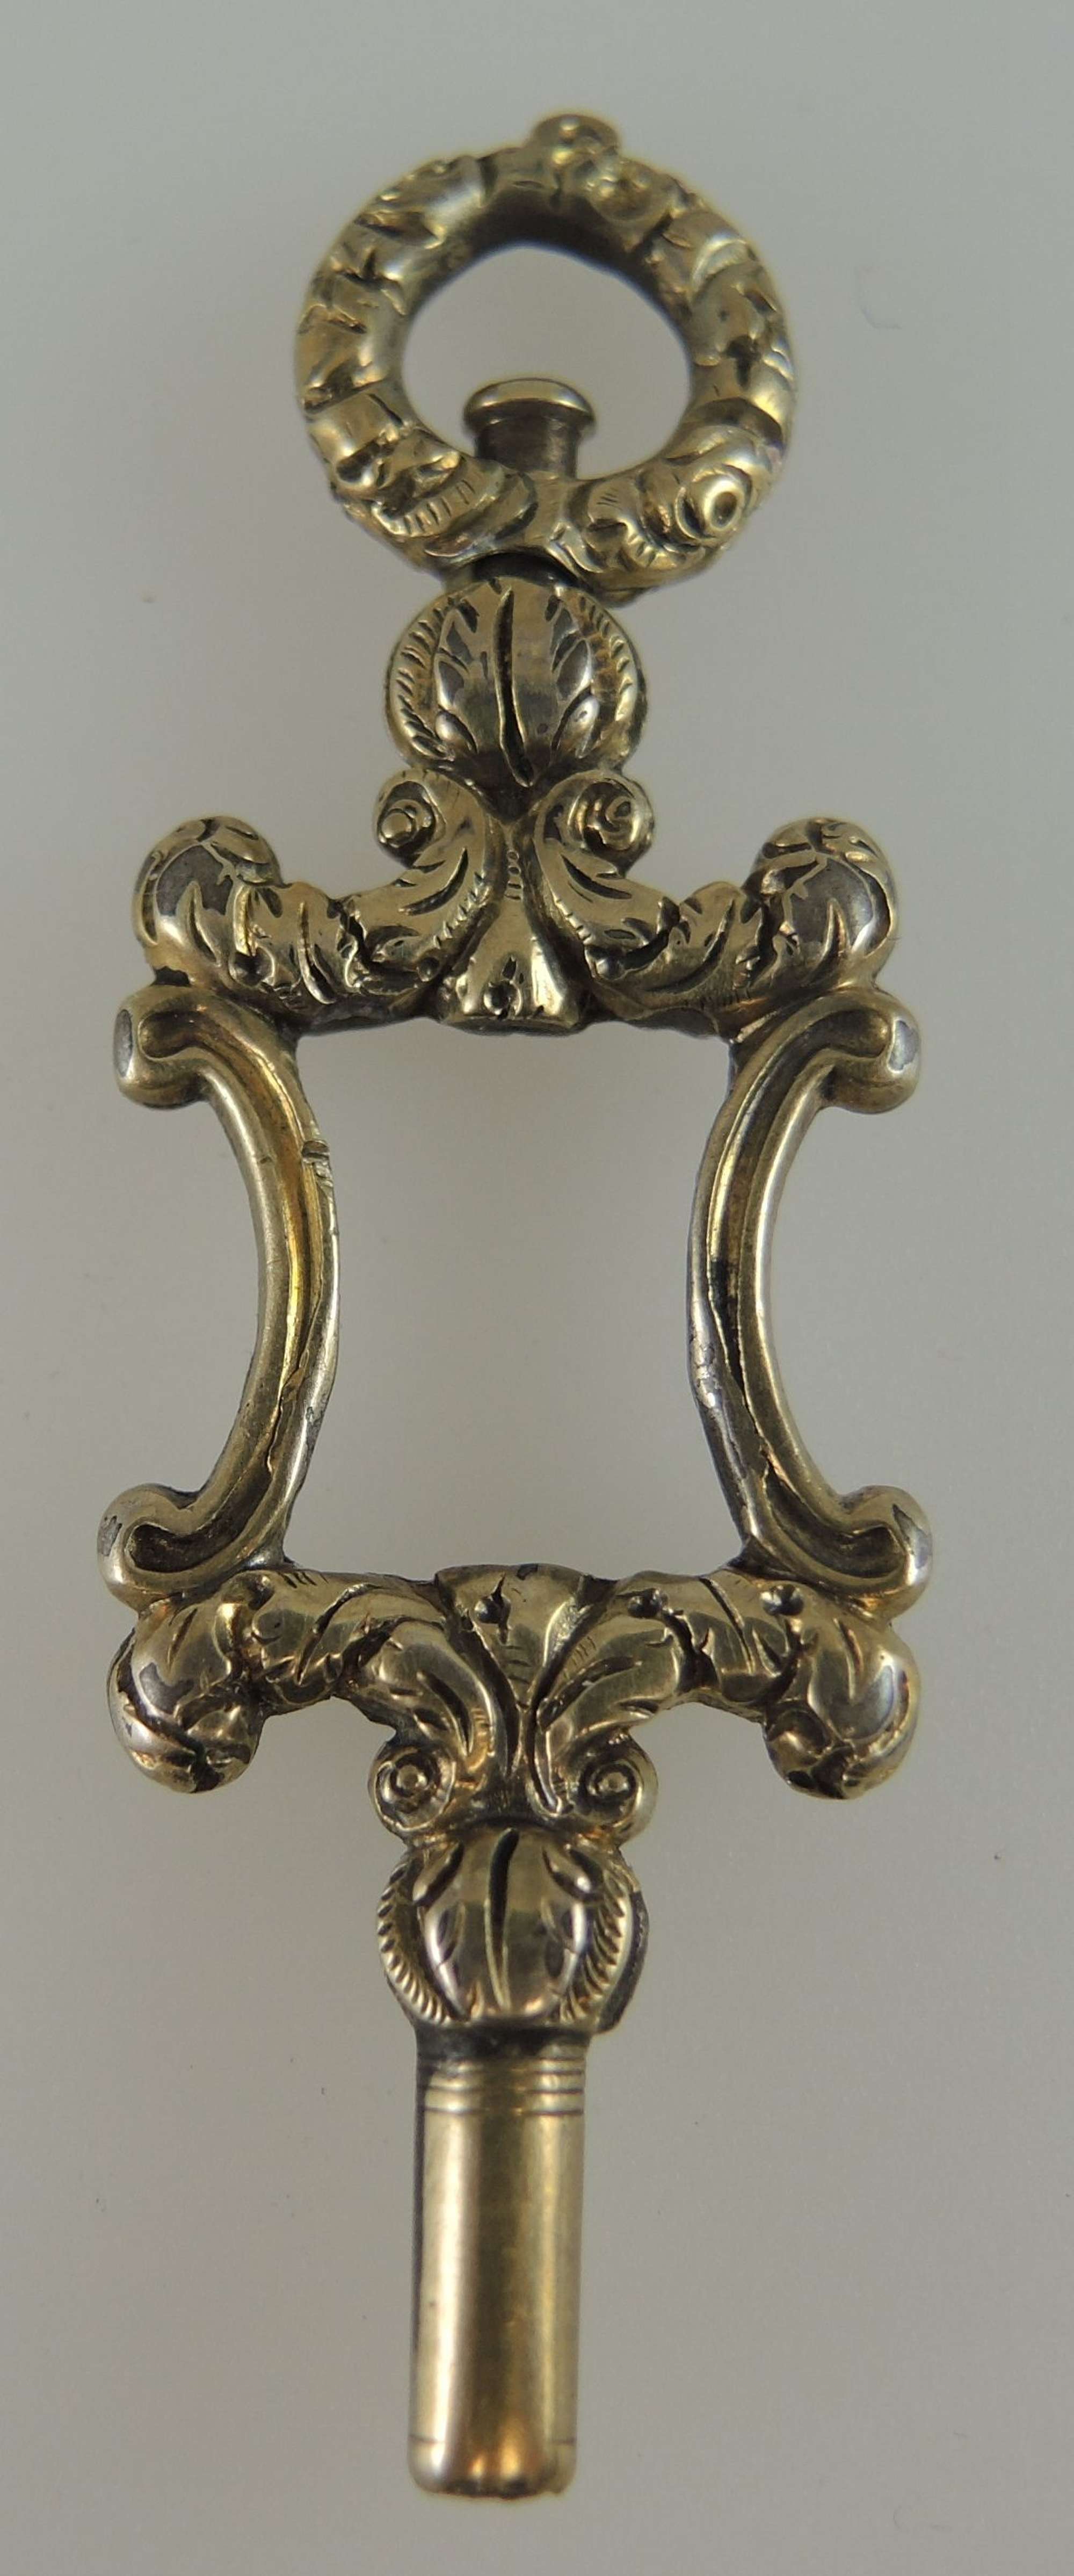 Fancy Gold cased Victorian pocket watch key c1850